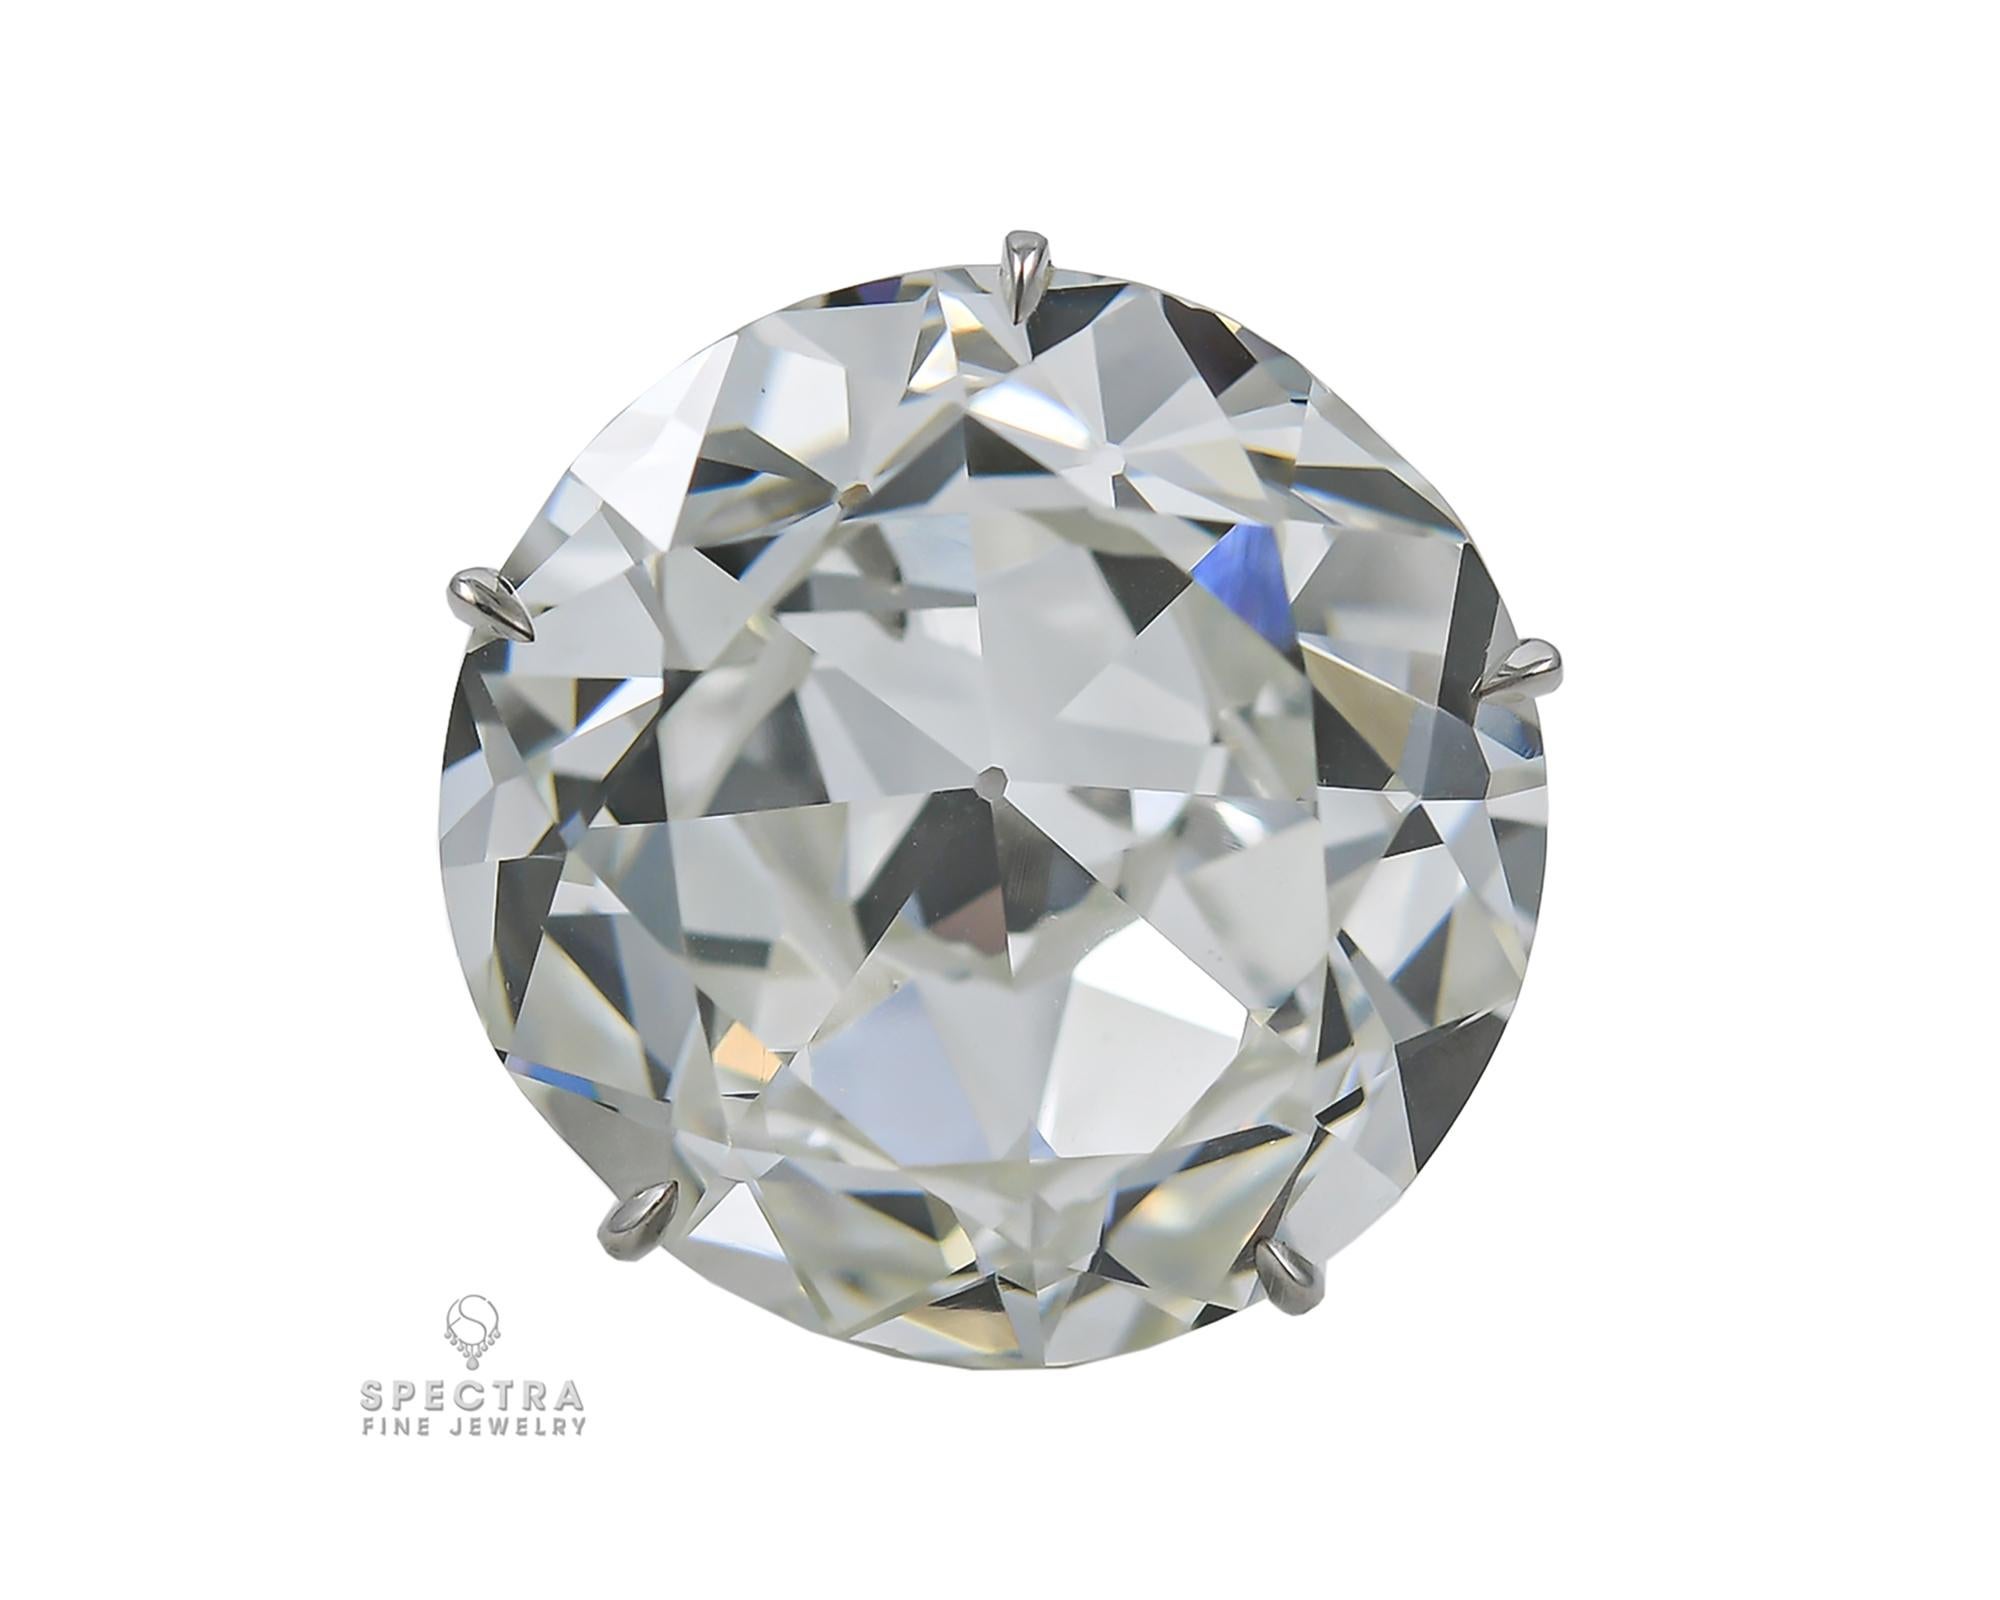 Y a-t-il quelque chose de plus durable qu'un diamant ancien de plus de 100 ans, unique en son genre, qui a été réutilisé dans une monture moderne ? Il est romantique de penser à ce diamant européen ancien, prédécesseur direct du diamant rond de